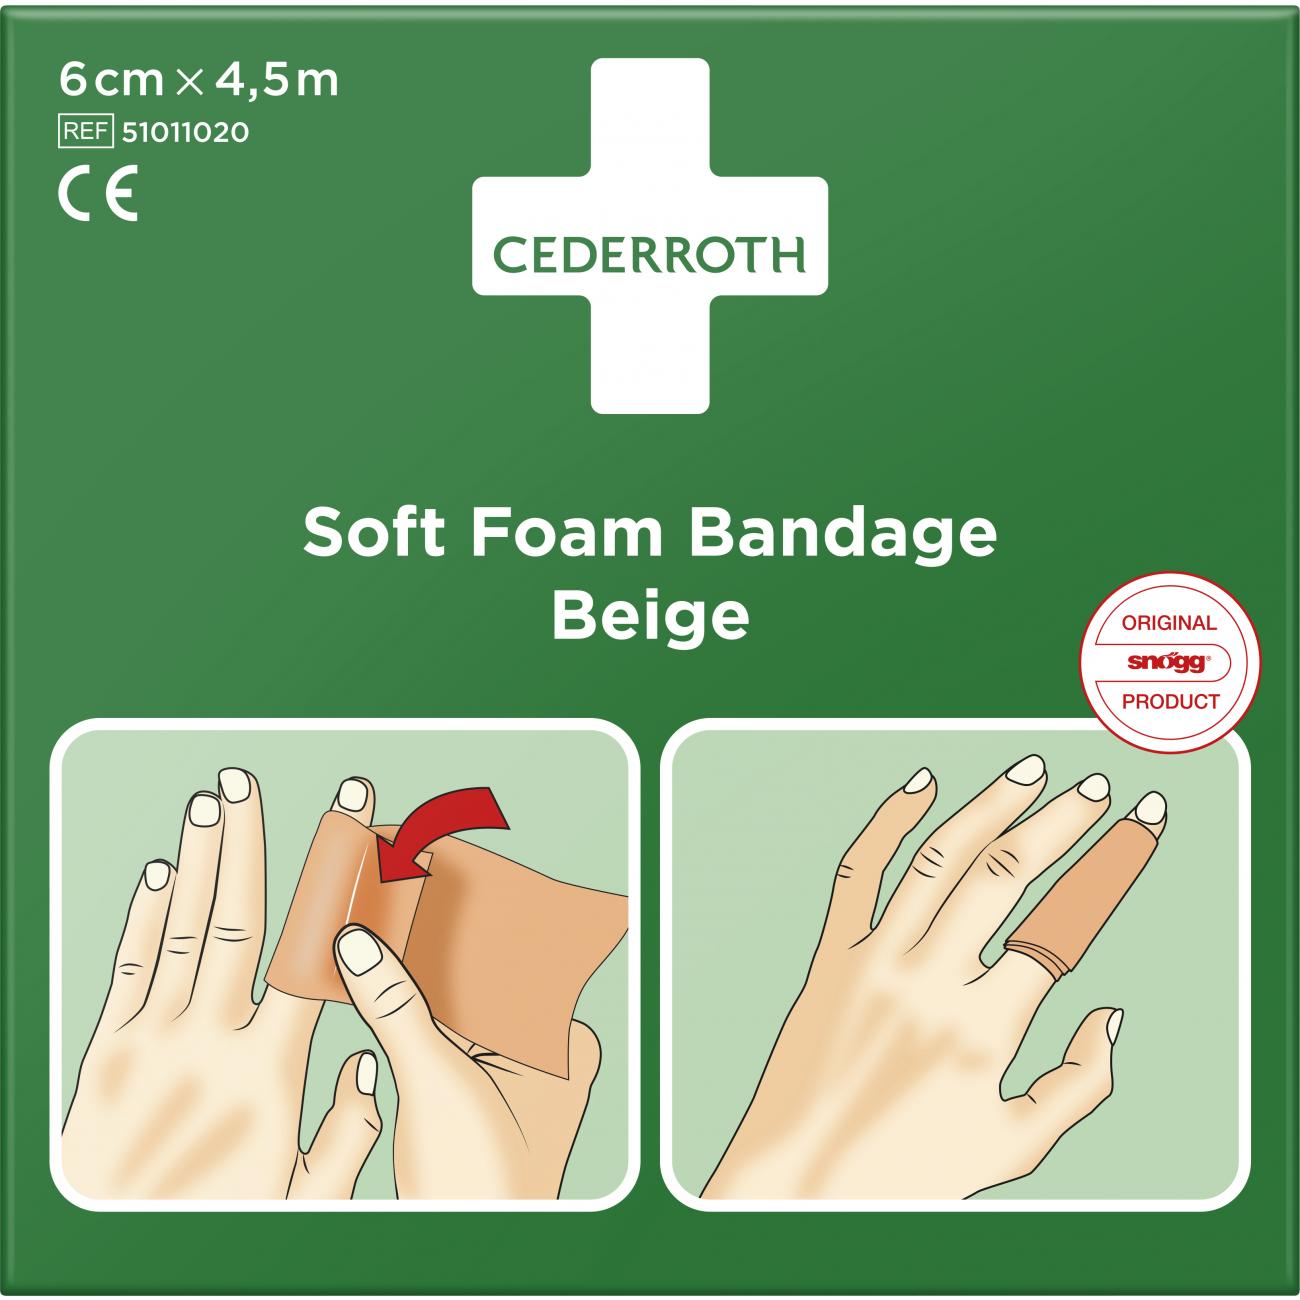 Cederroth Soft Foam Bandage Beige 6 Cm X 4,5 M